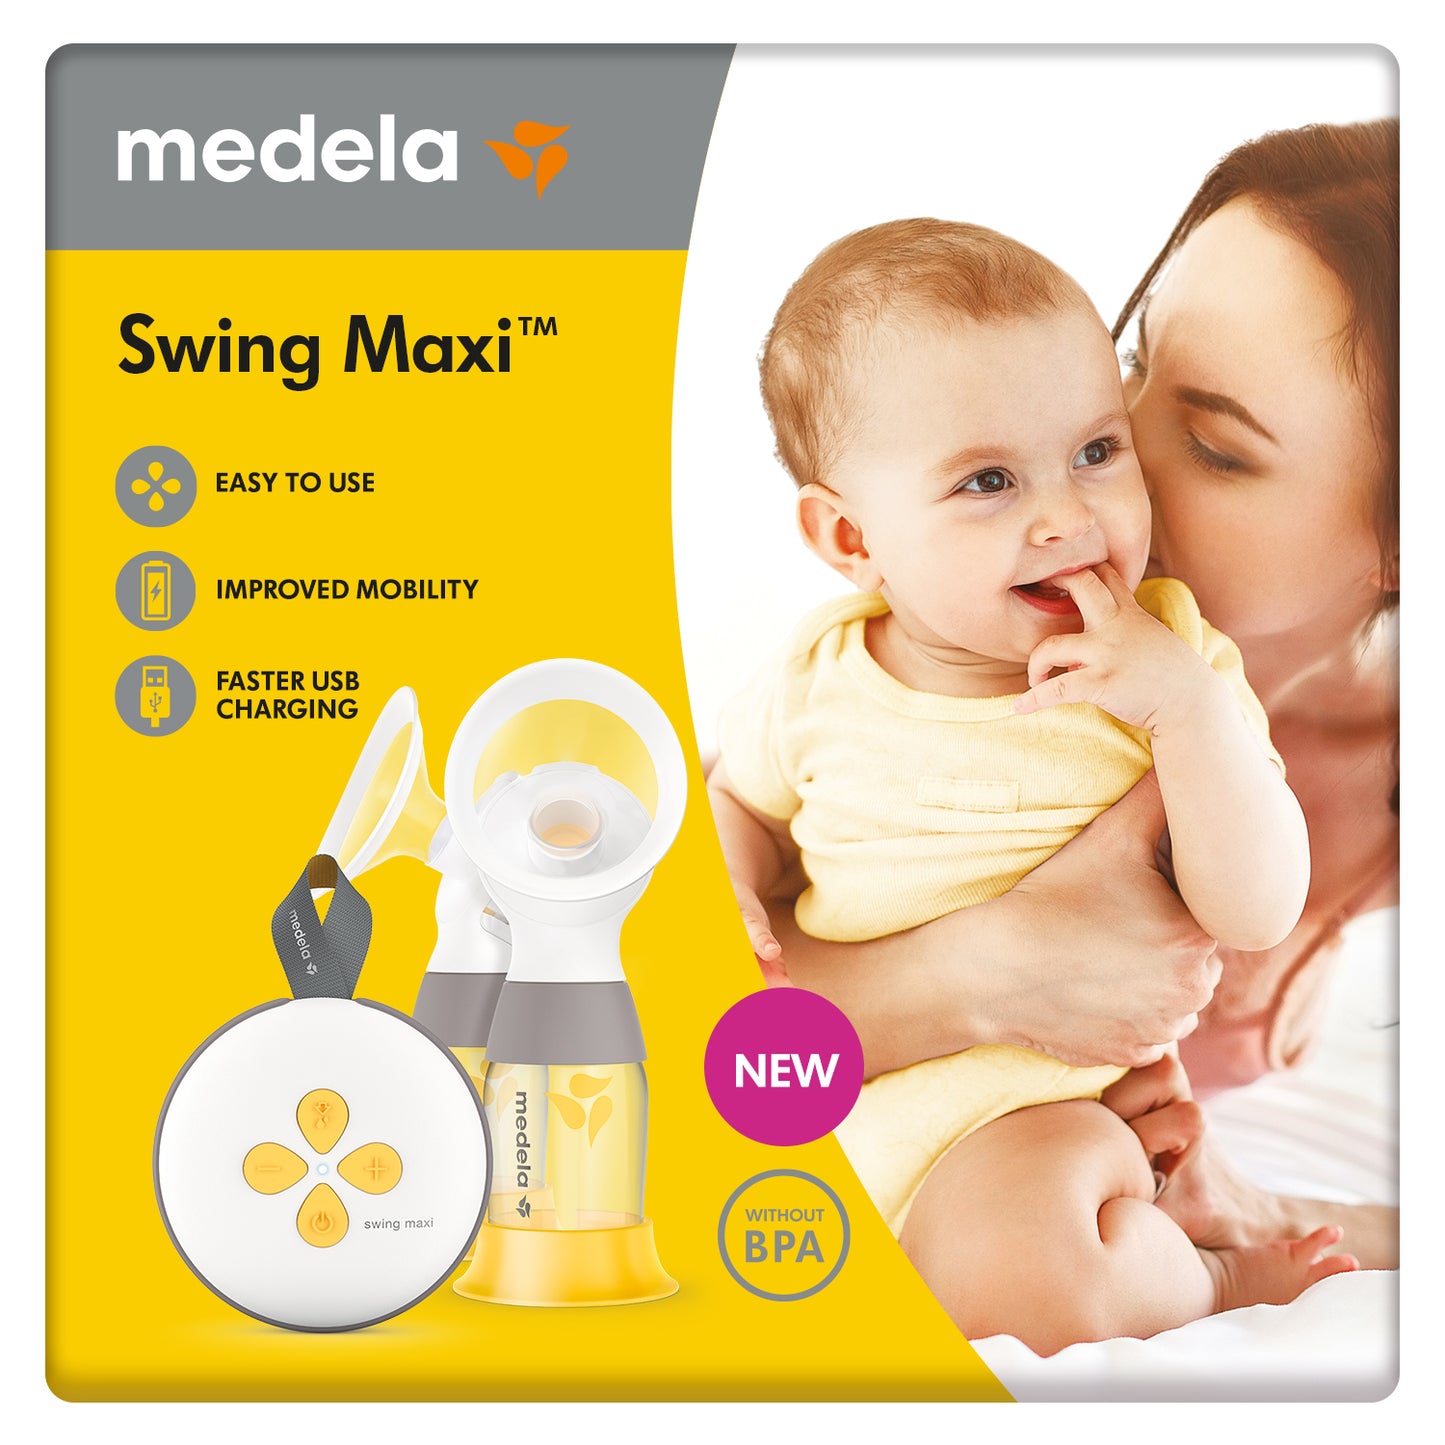 مضخة الثدي الكهربائية المزدوجة من ميديلا سوينغ ماكسي - إعادة تصميم مضخة الحليب الكهربائية المزدوجة